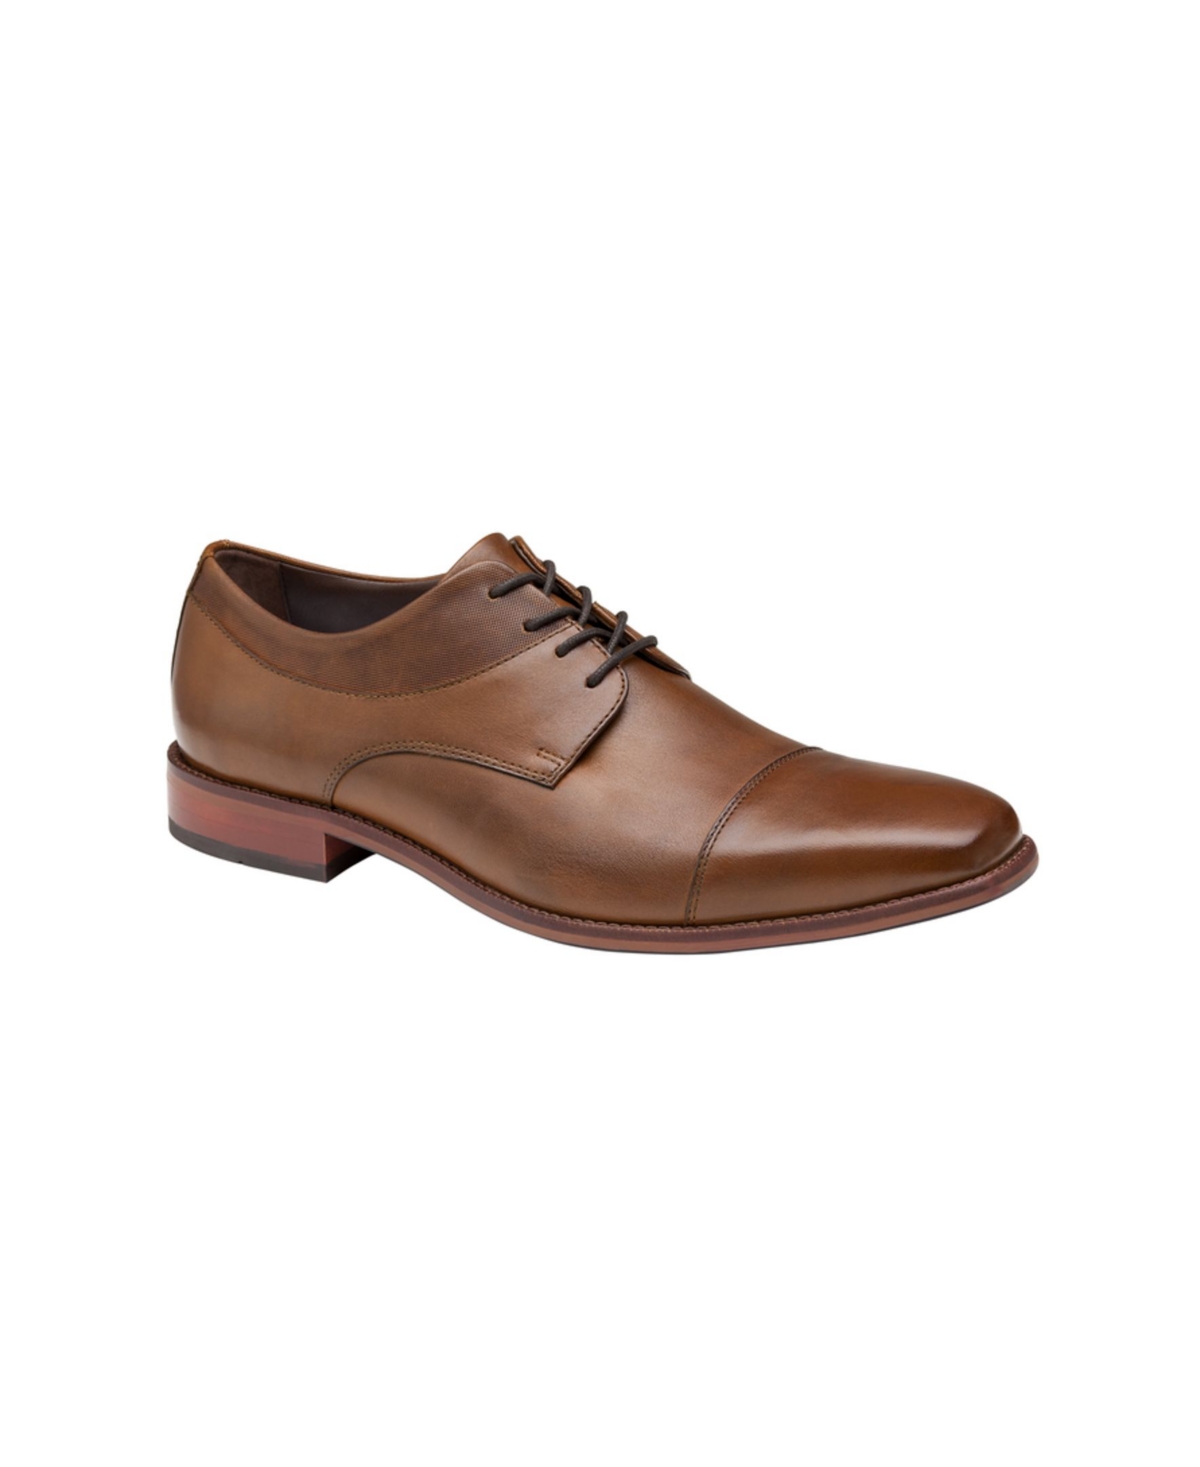 Men's Archer Cap Toe Oxford Shoes - Cognac